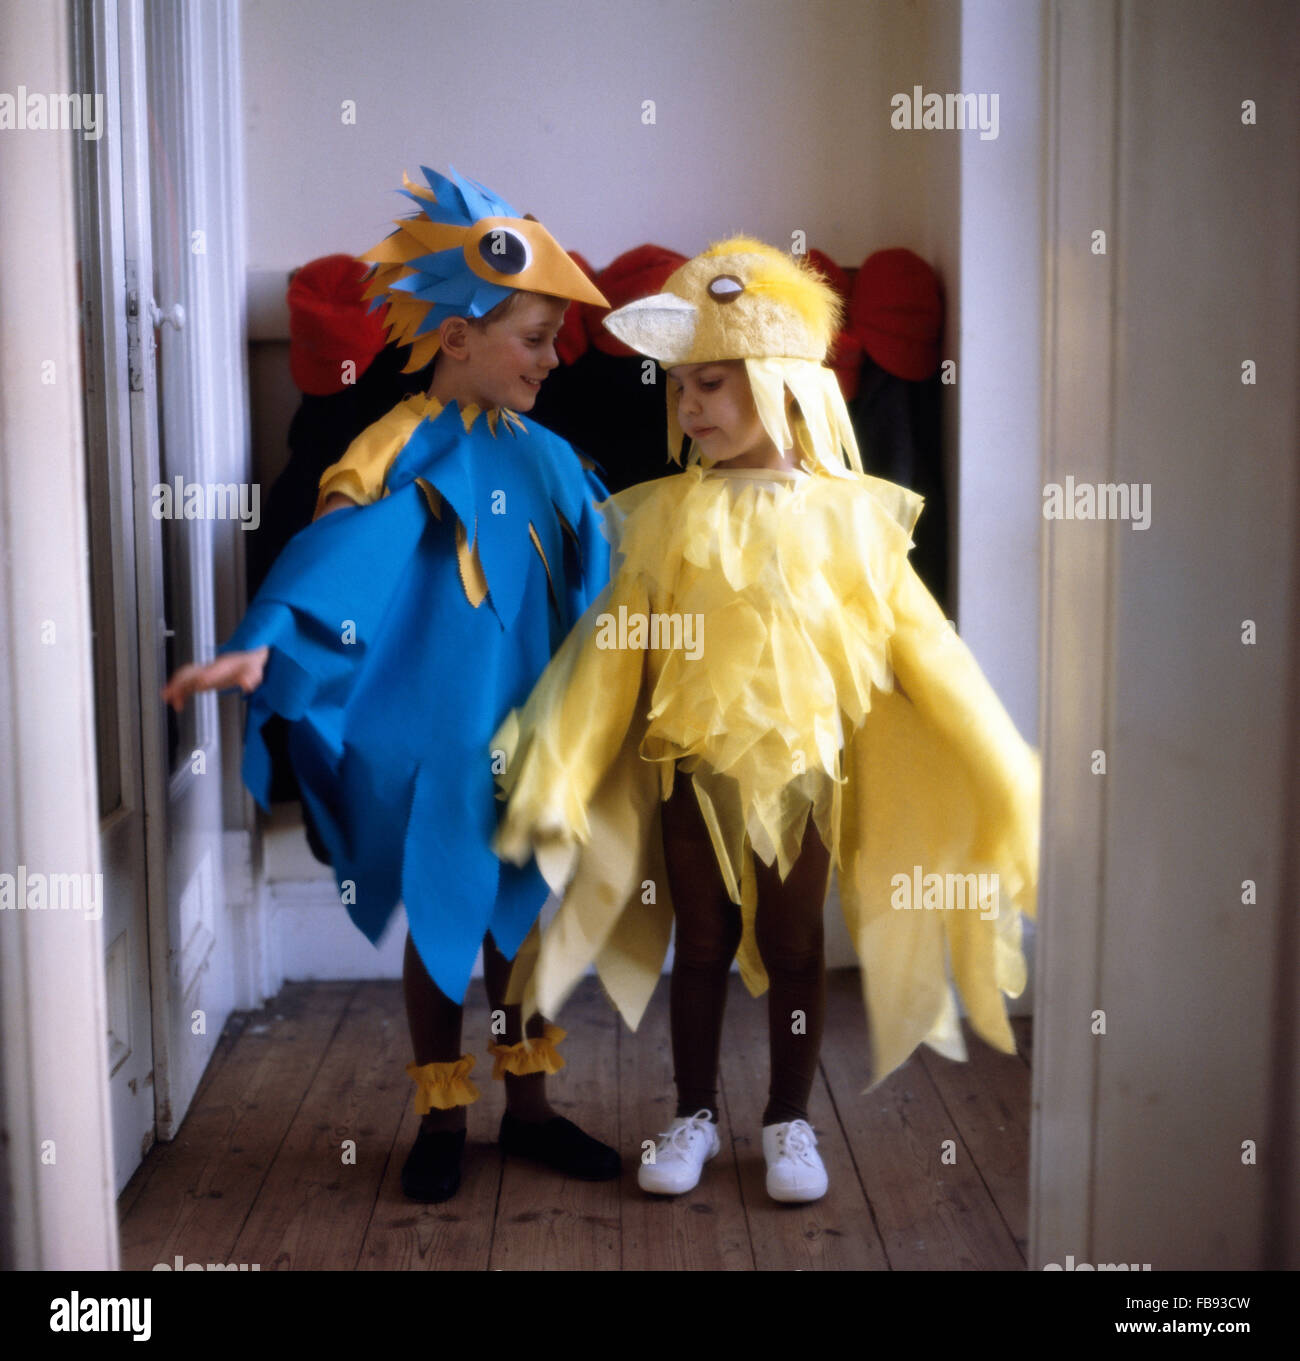 Costumi divertenti immagini e fotografie stock ad alta risoluzione - Alamy